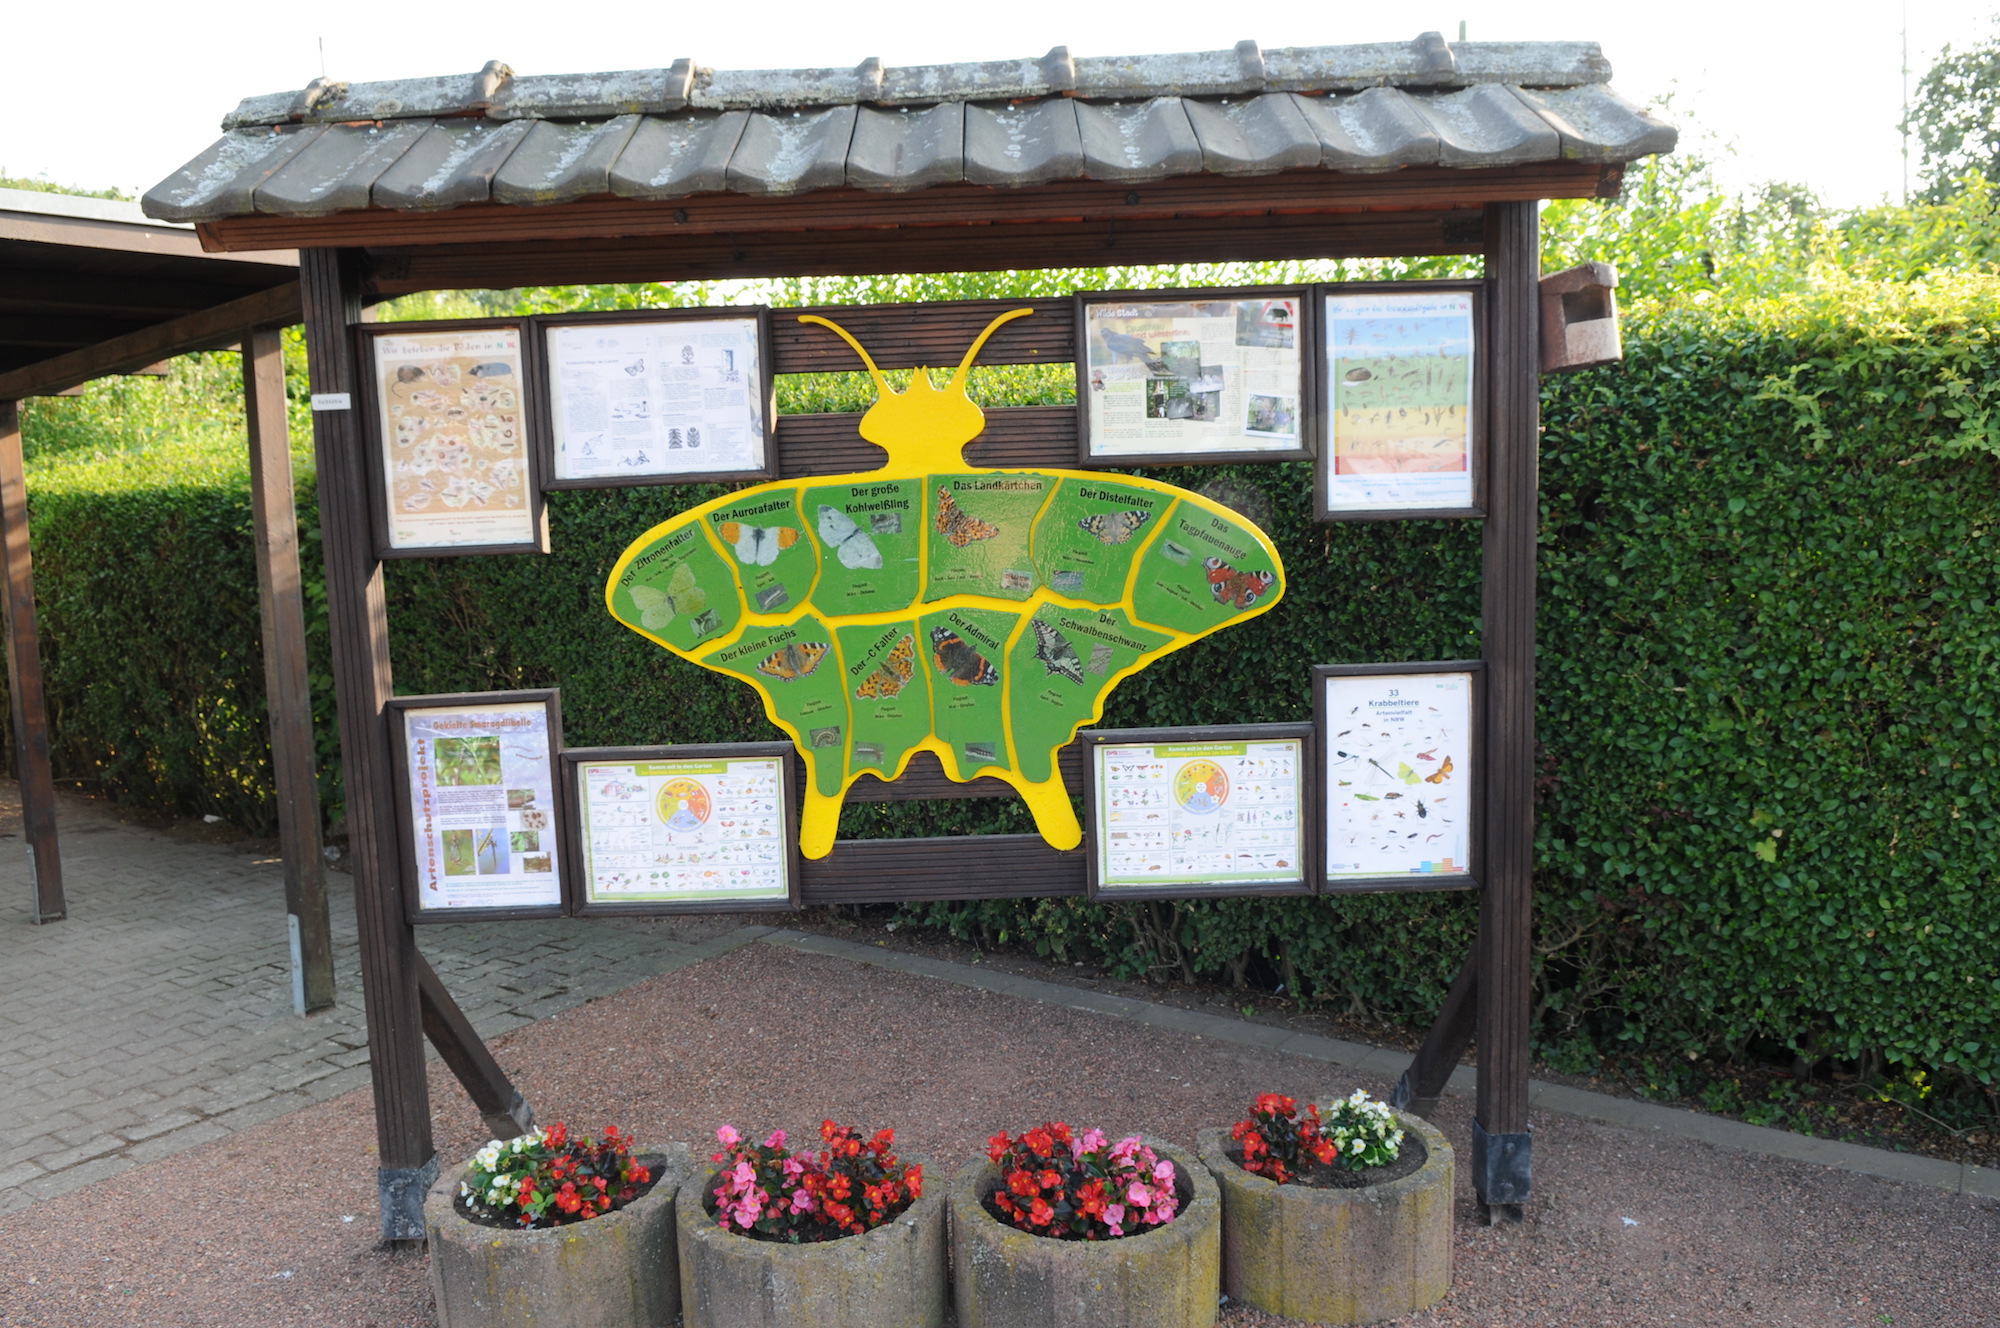 Welche Bedeutung Insekten für die Umwelt haben, zeigt diese Schautafel im Kleingartenverein Waldhauserhöhe. (c) Garnet Manecke